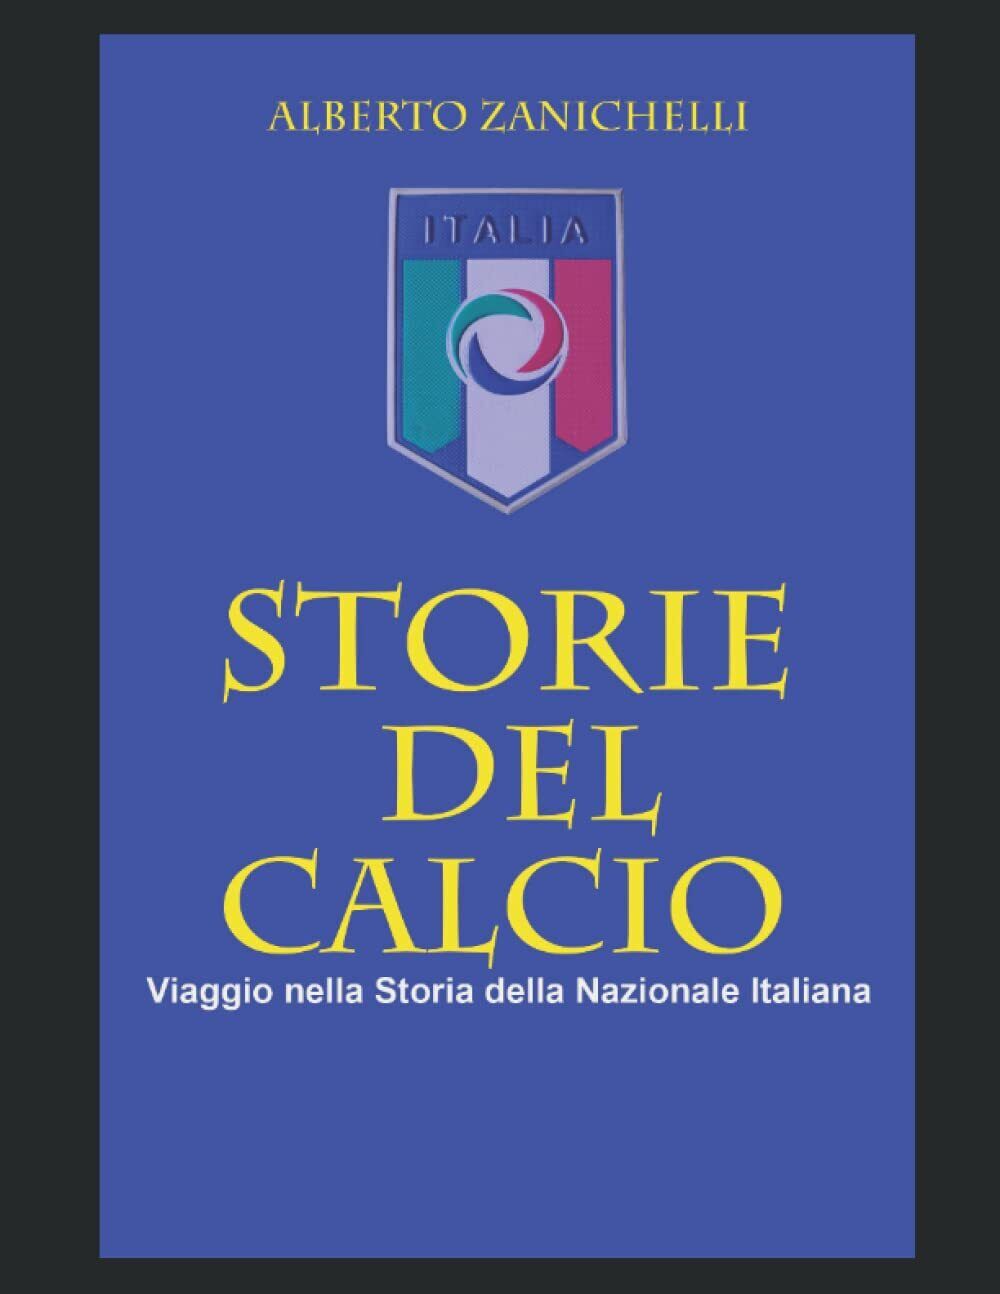 STORIE DEL CALCIO - Alberto Zanichelli - Independently published, 2021